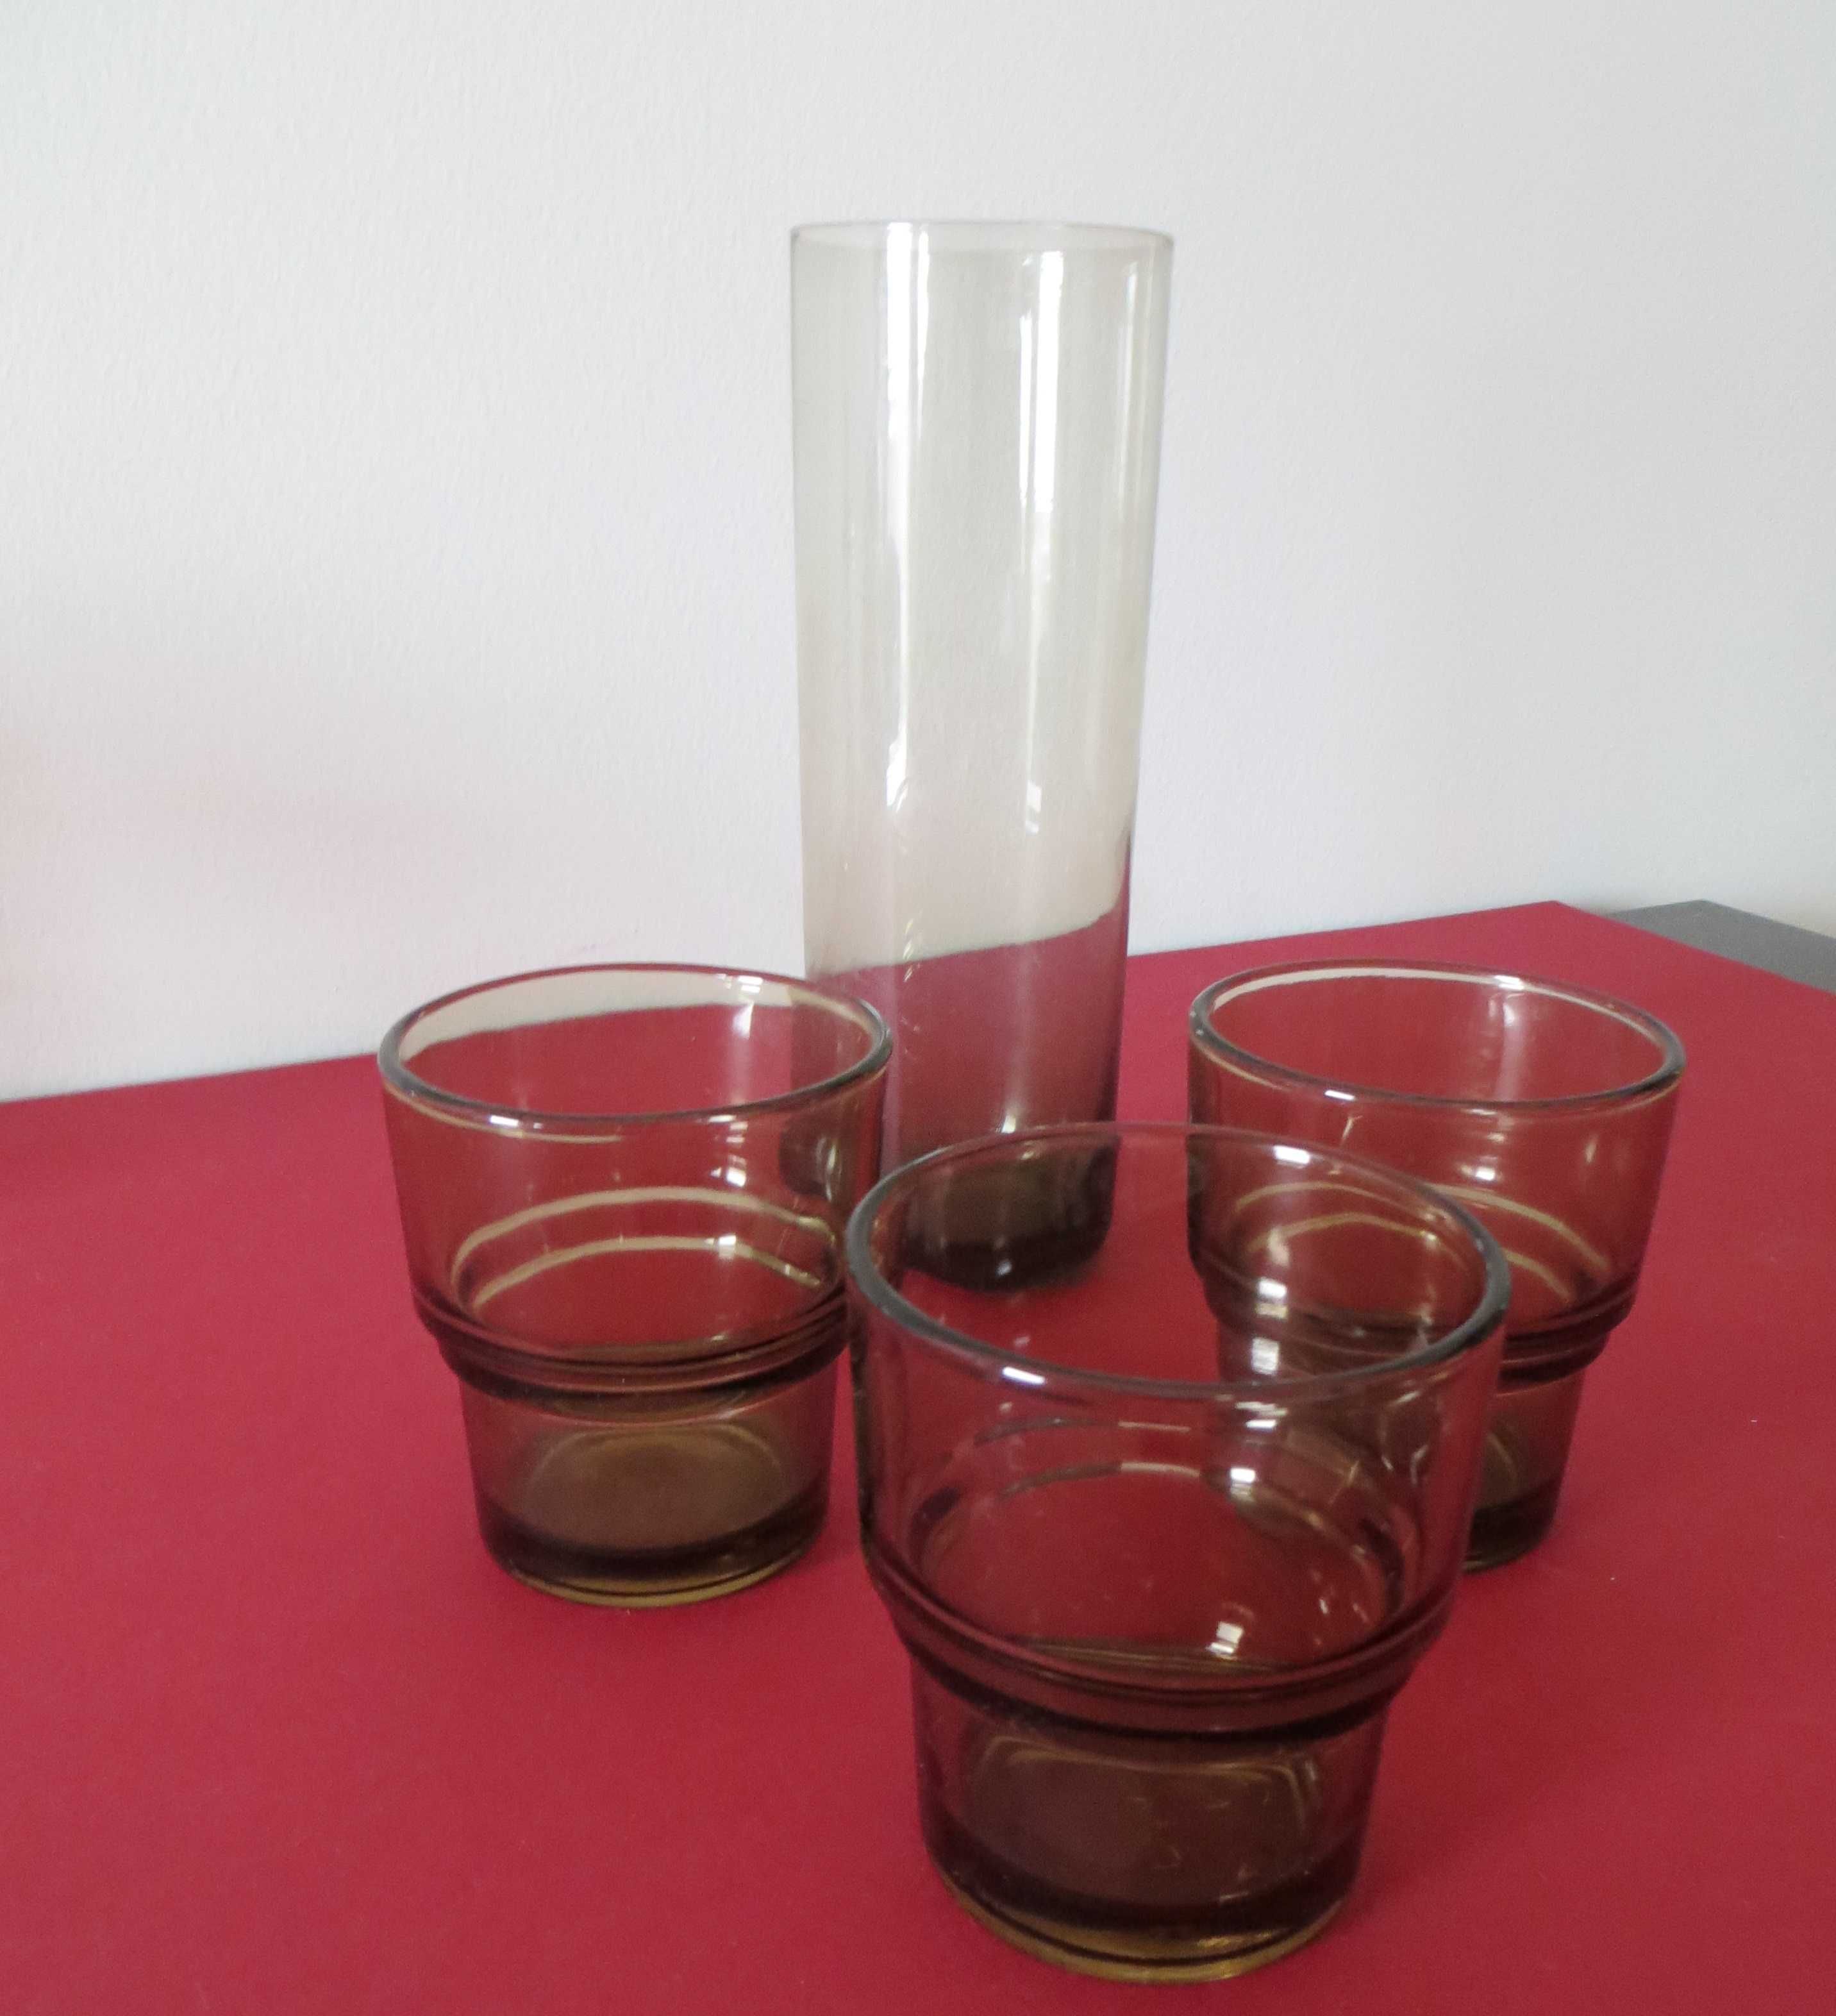 Jarra Antiga, Vidro Alta com e 3 copos mesa também em vidro castanho